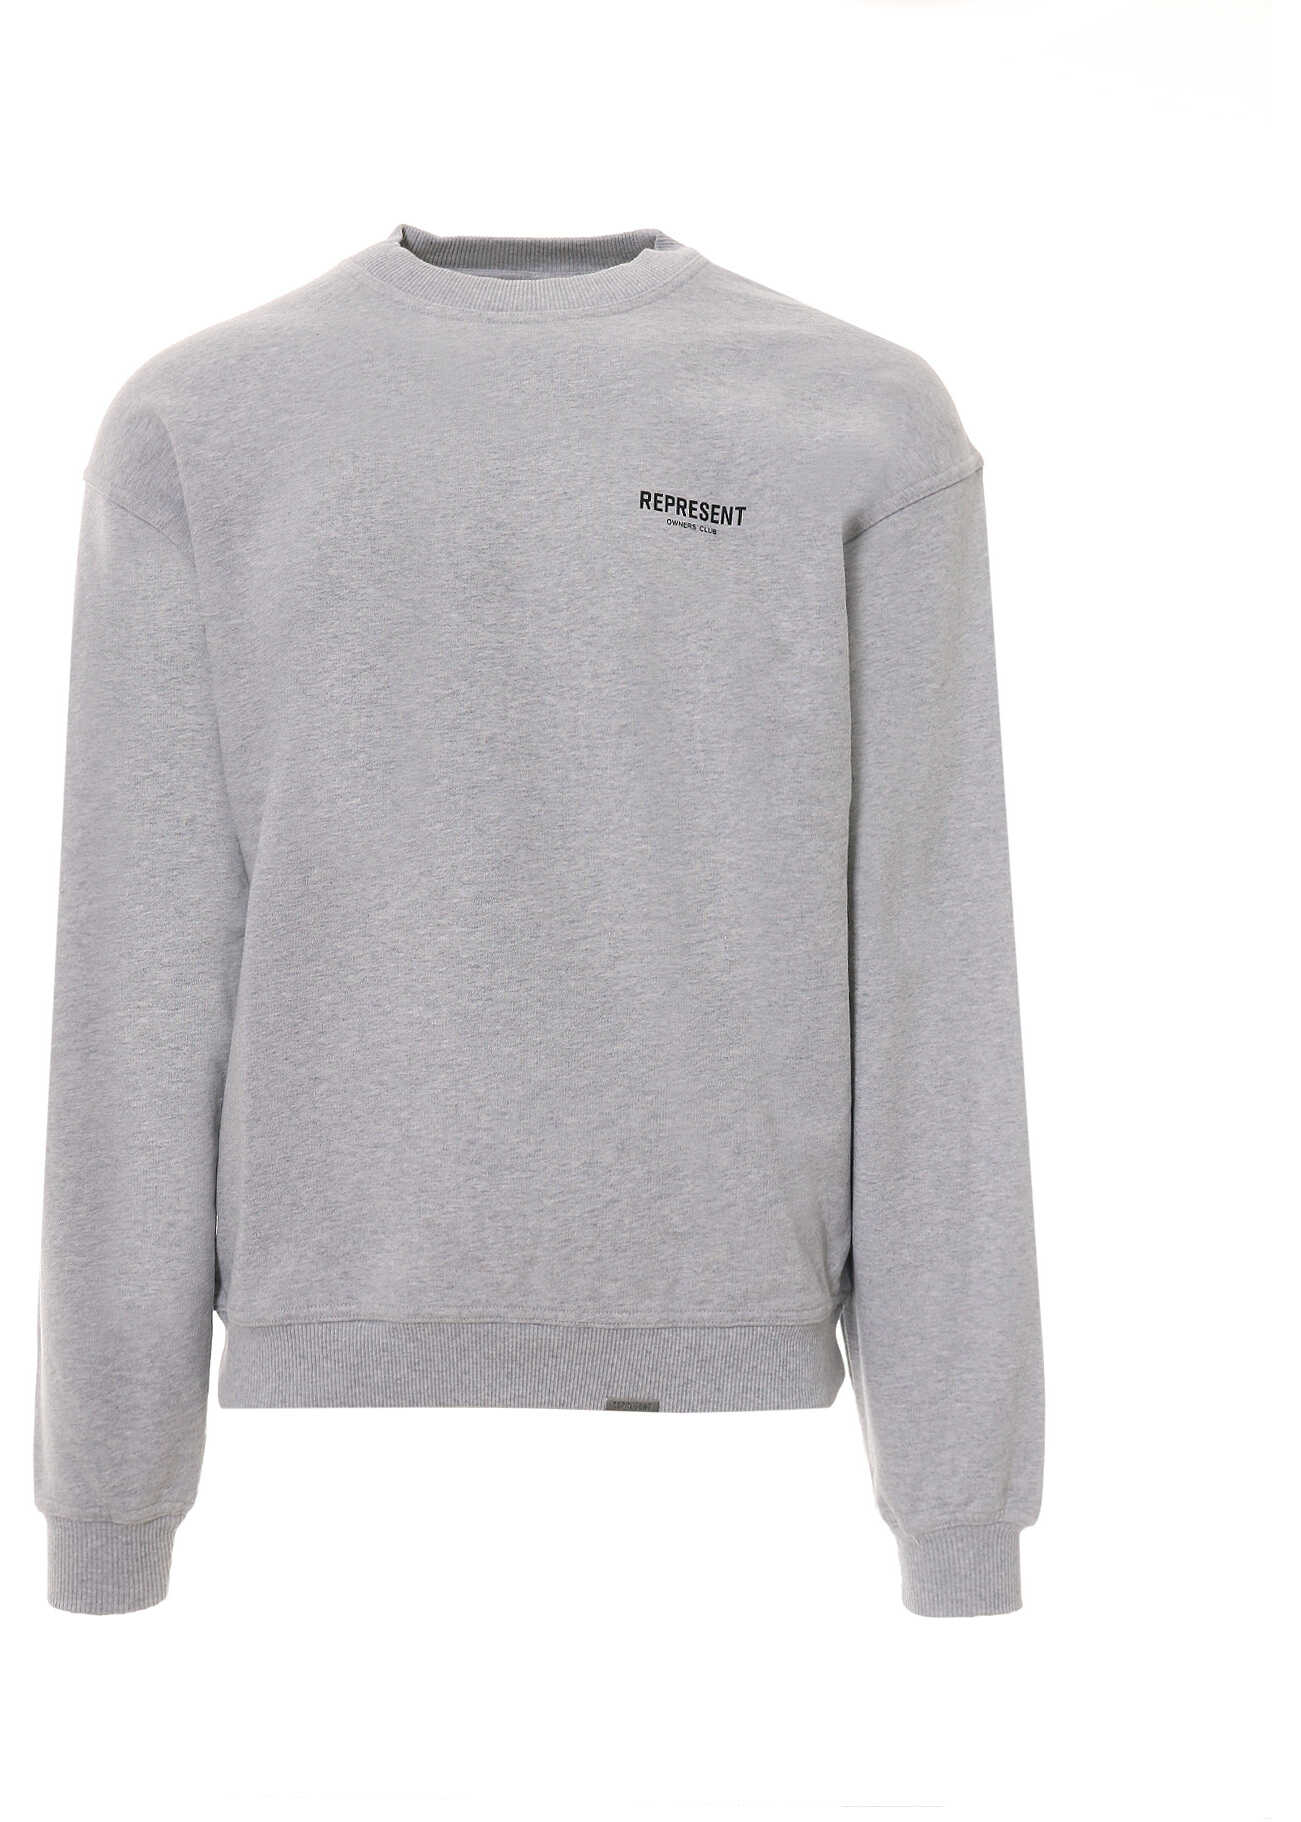 REPRESENT Sweatshirt Grey